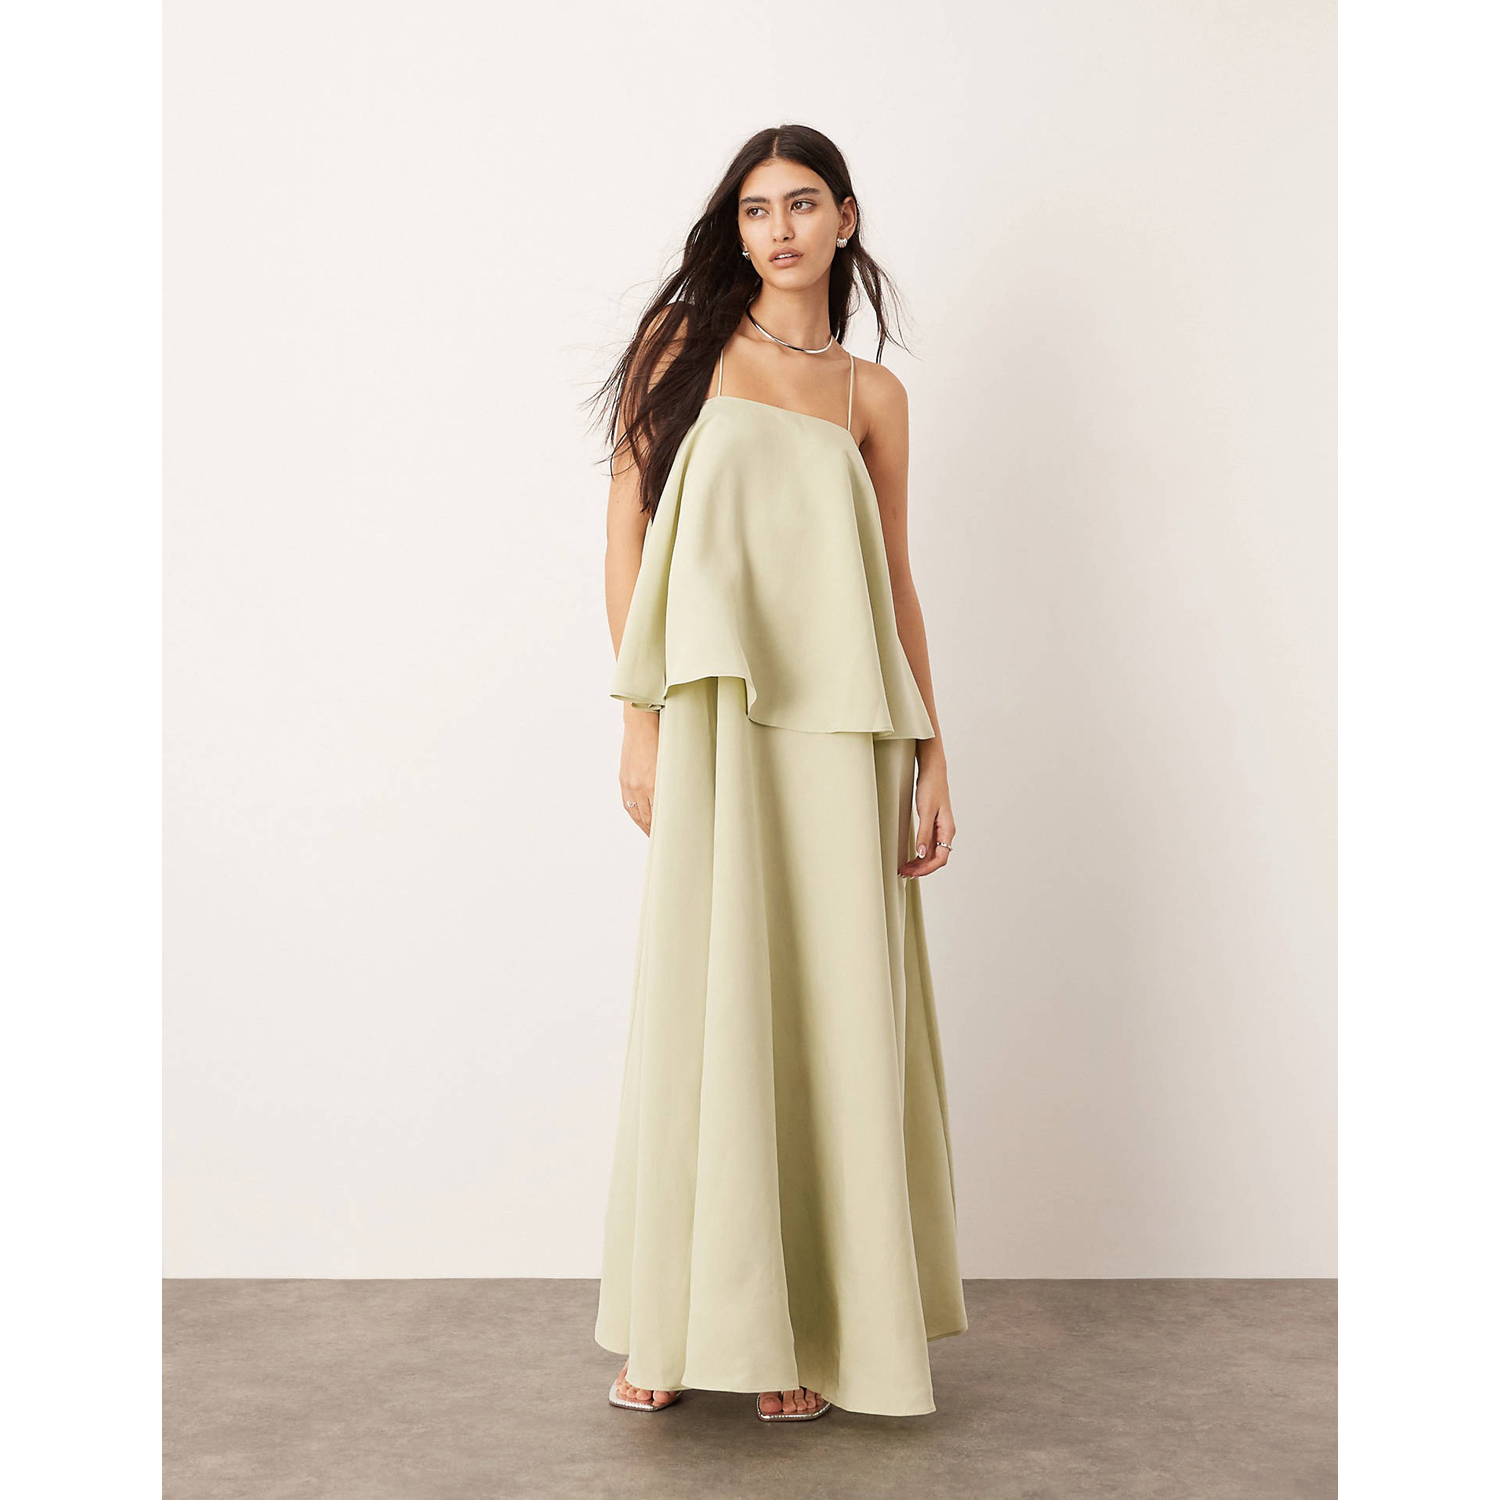 Платье Asos Edition Strappy Square Neck Maxi With Dramatic Drape Detail, зеленый платье макси asos sleeveless drape detail черный розовый